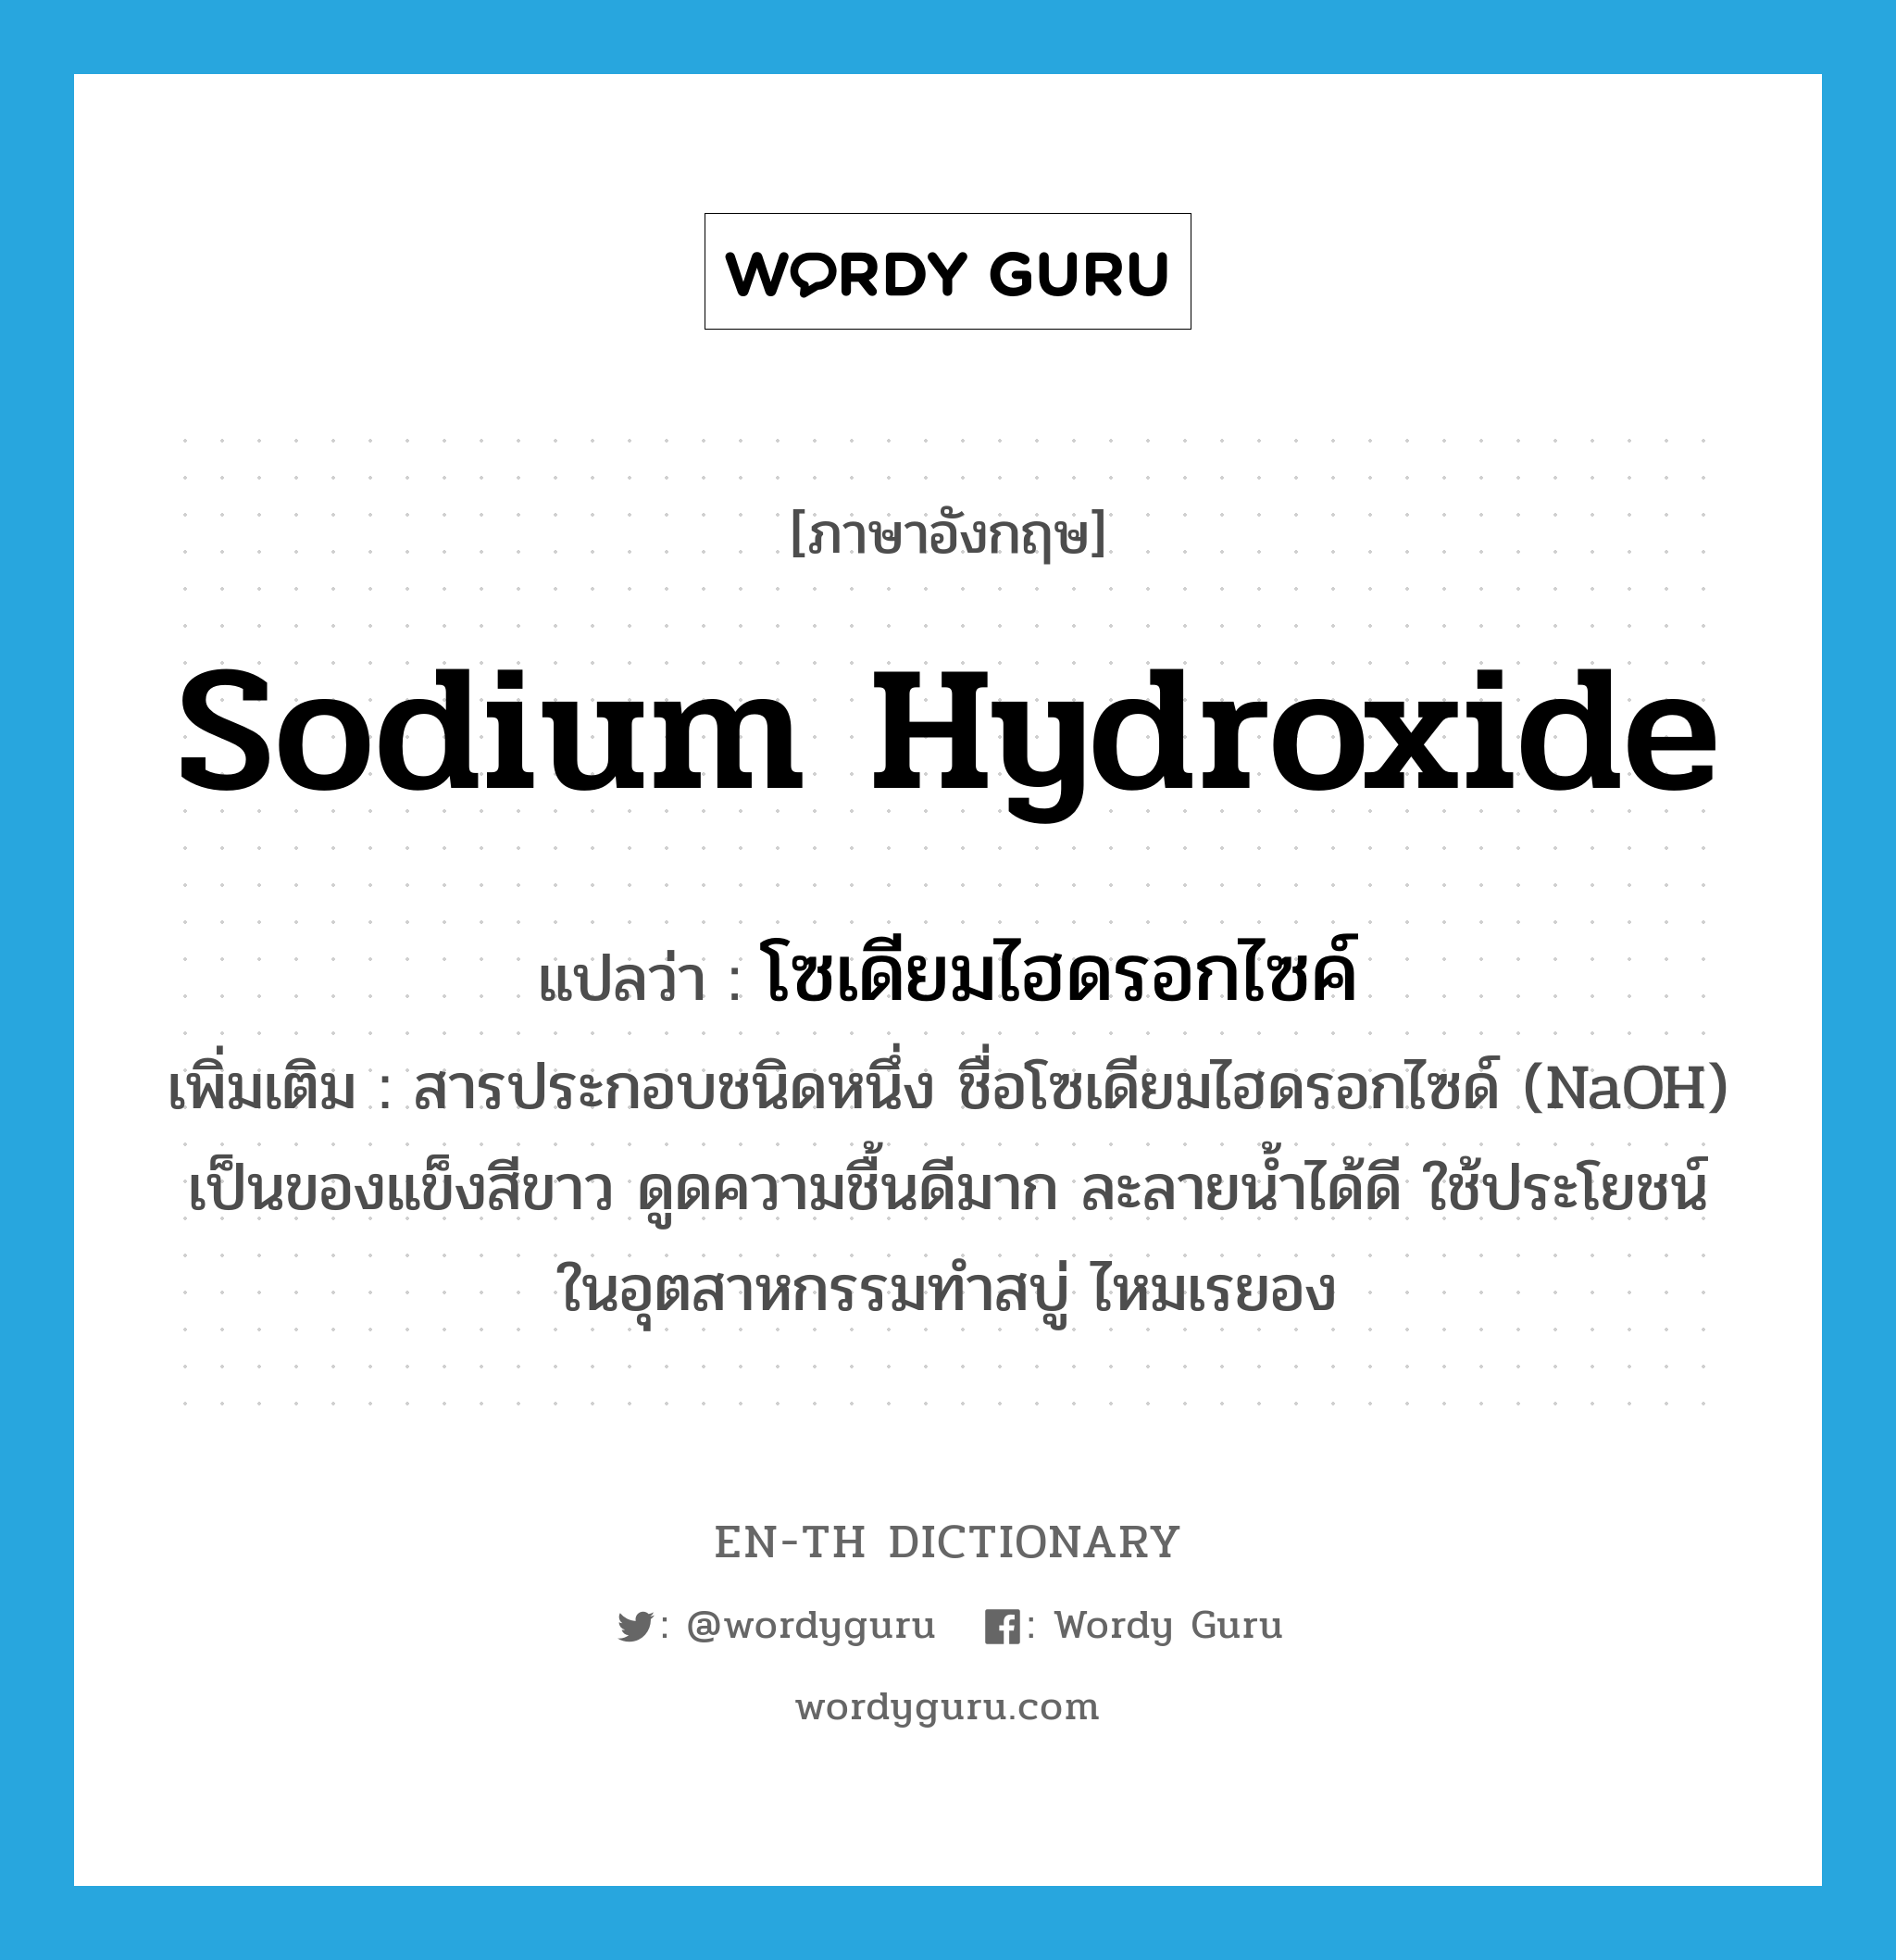 sodium hydroxide แปลว่า?, คำศัพท์ภาษาอังกฤษ sodium hydroxide แปลว่า โซเดียมไฮดรอกไซค์ ประเภท N เพิ่มเติม สารประกอบชนิดหนึ่ง ชื่อโซเดียมไฮดรอกไซด์ (NaOH) เป็นของแข็งสีขาว ดูดความชื้นดีมาก ละลายน้ำได้ดี ใช้ประโยชน์ในอุตสาหกรรมทำสบู่ ไหมเรยอง หมวด N